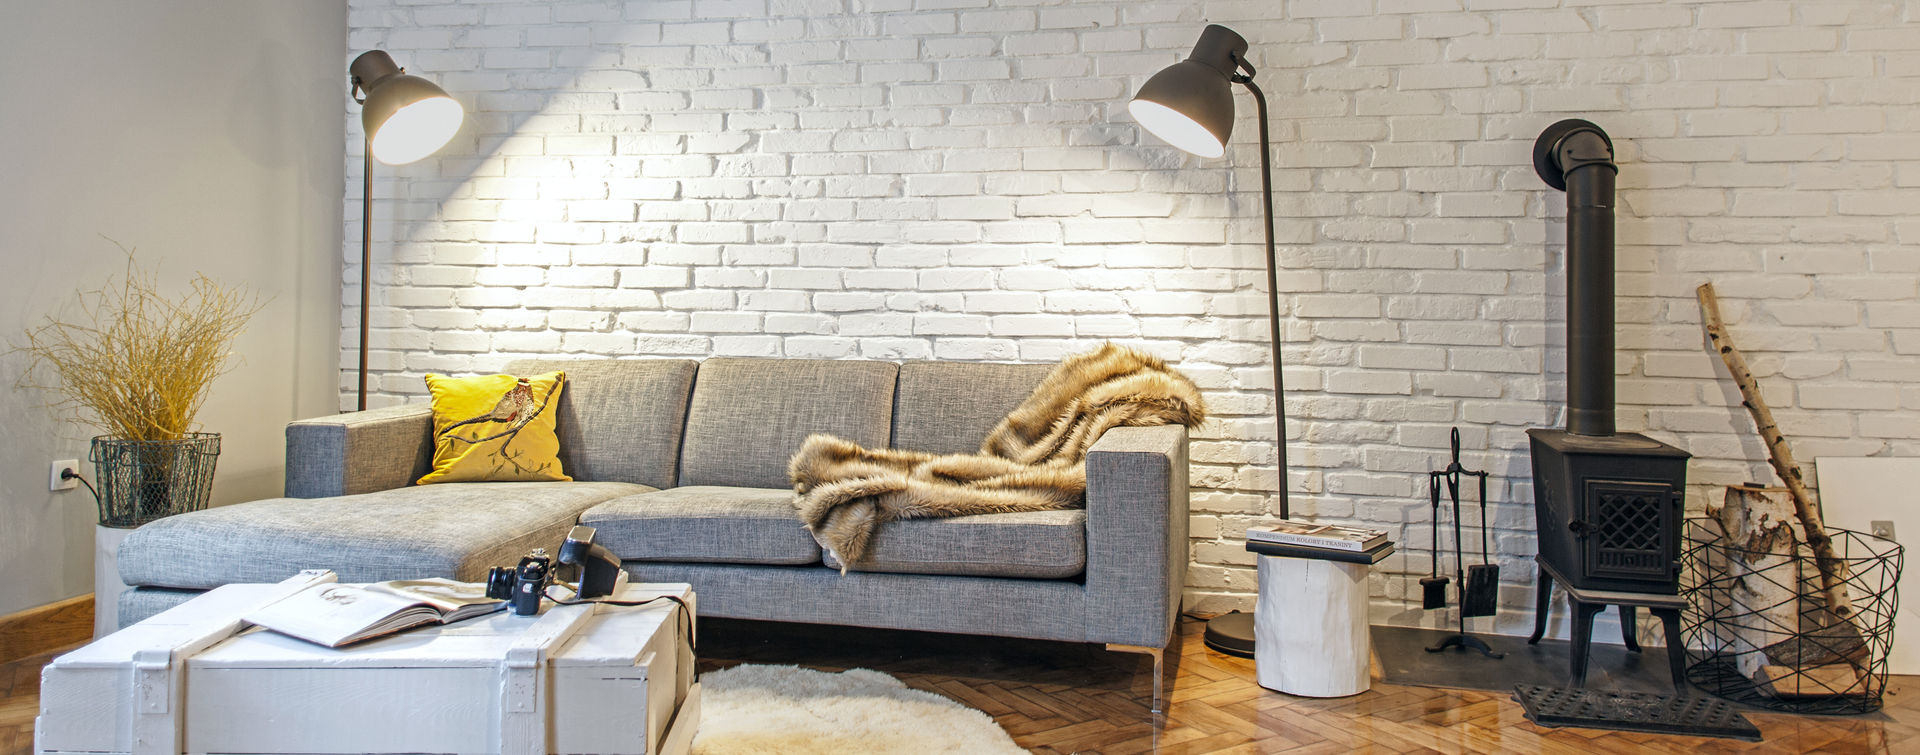 Apartament w Sopocie, DoMilimetra DoMilimetra Salon moderne